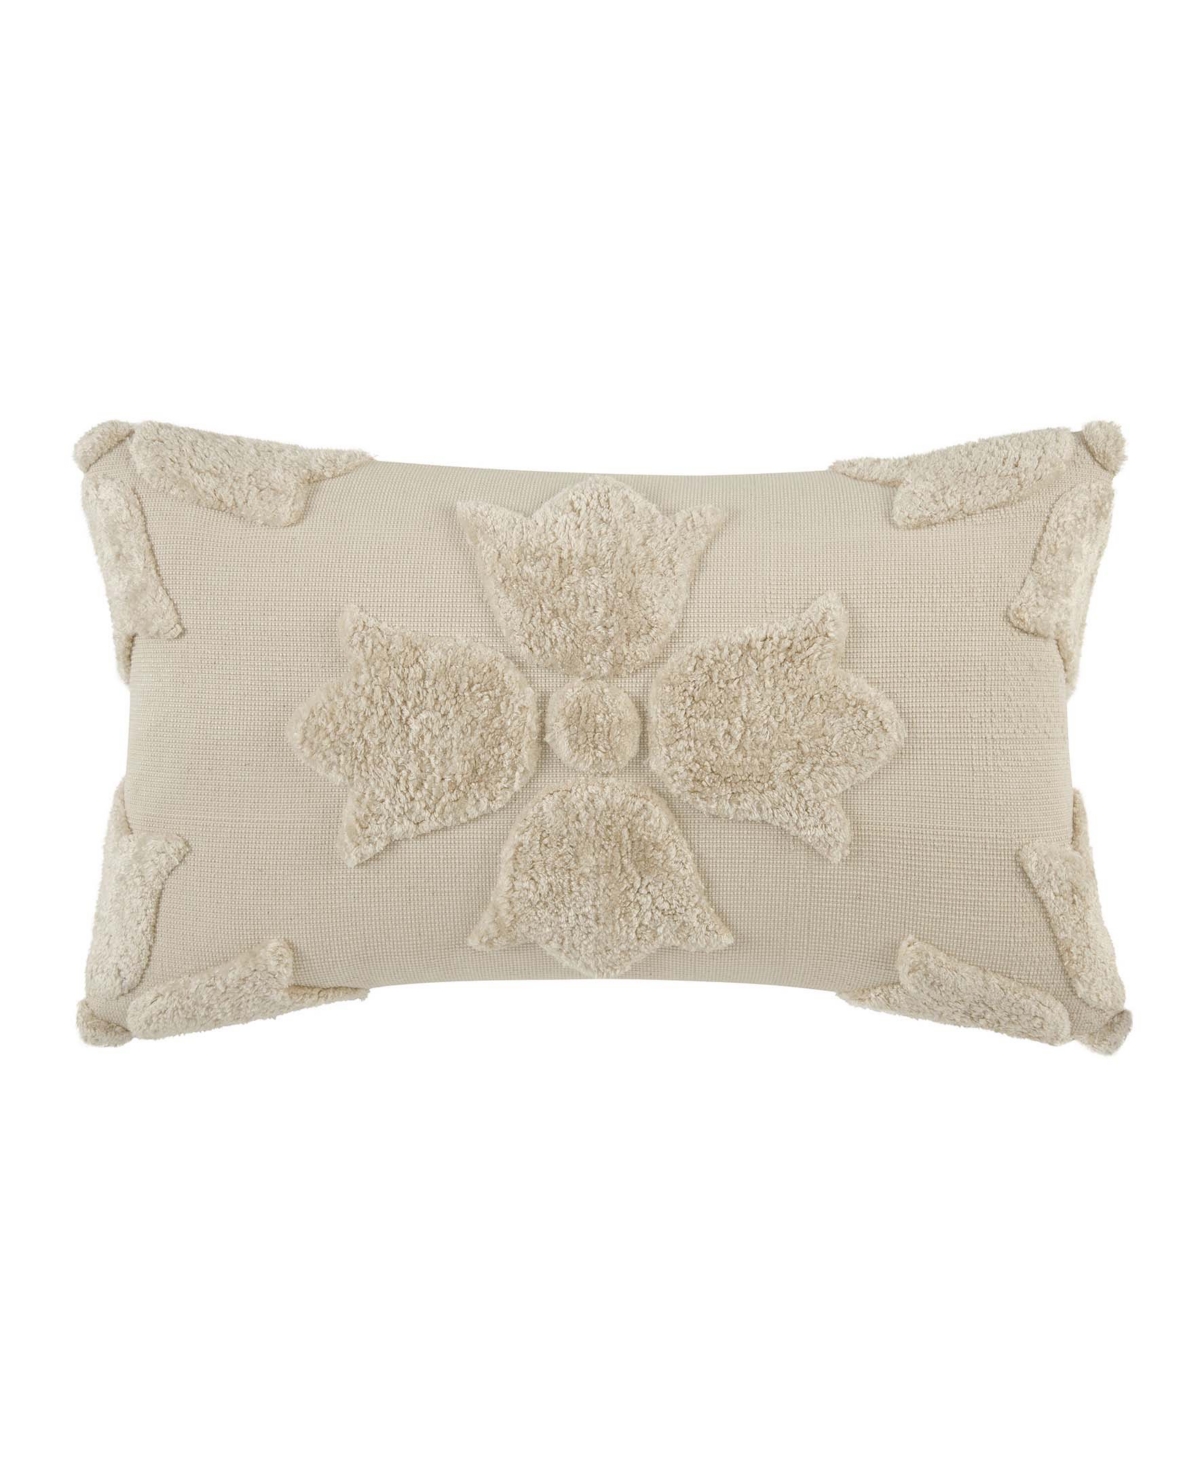 Patricia Nash Olive Grove Fleur De Lis Decorative Pillow, 14" X 22" In Taupe